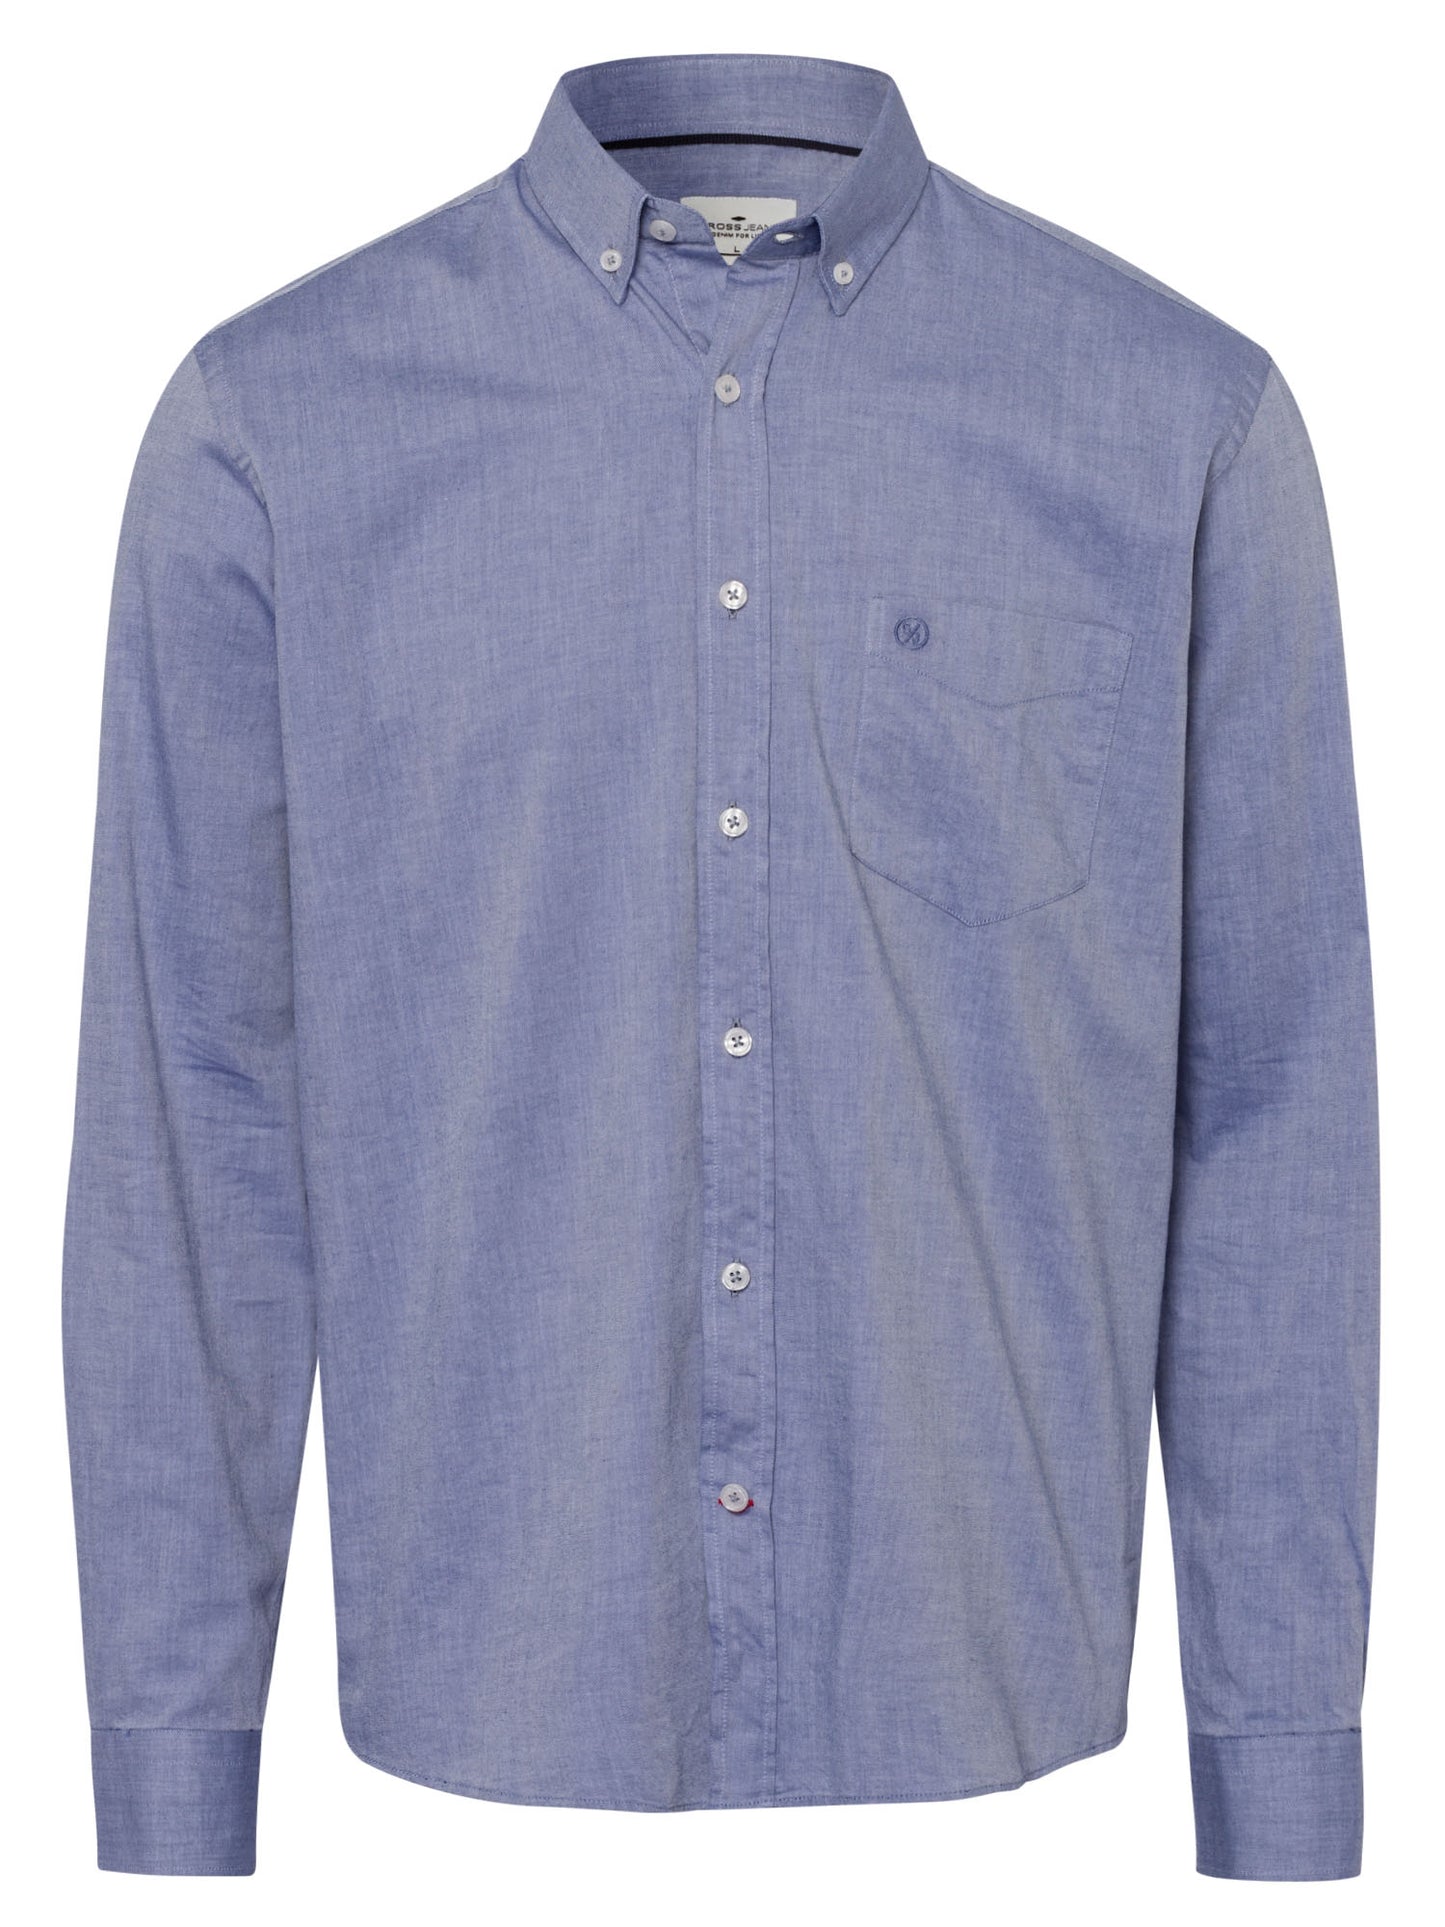 Men's regular long-sleeved shirt chambray light blue